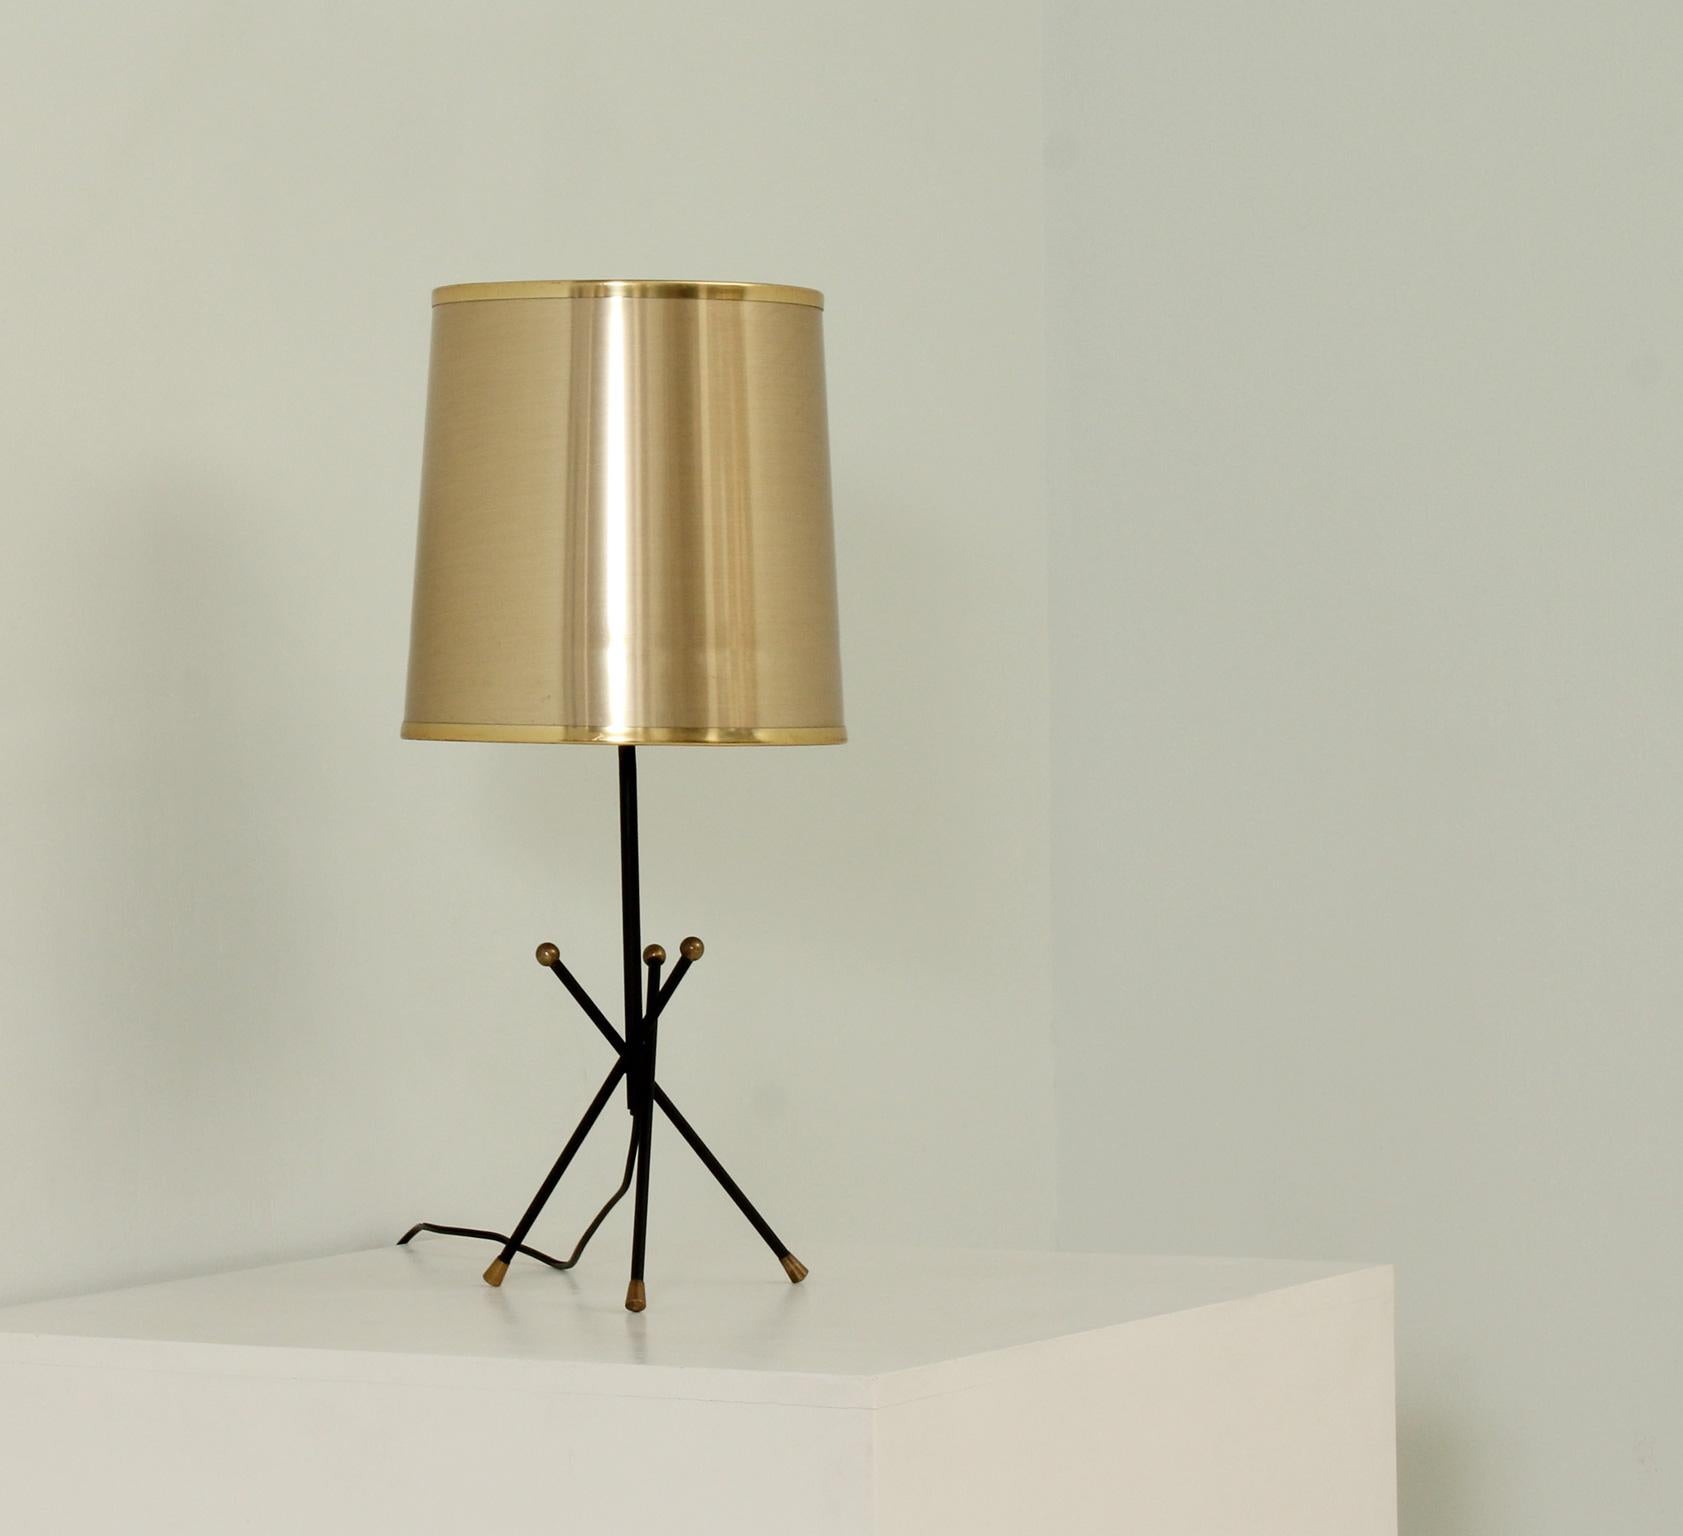 Lampe de table à trois pieds des années 1950, Espagne. Base en métal noir avec détails en laiton, l'abat-jour est ultérieurement en plastique doré.